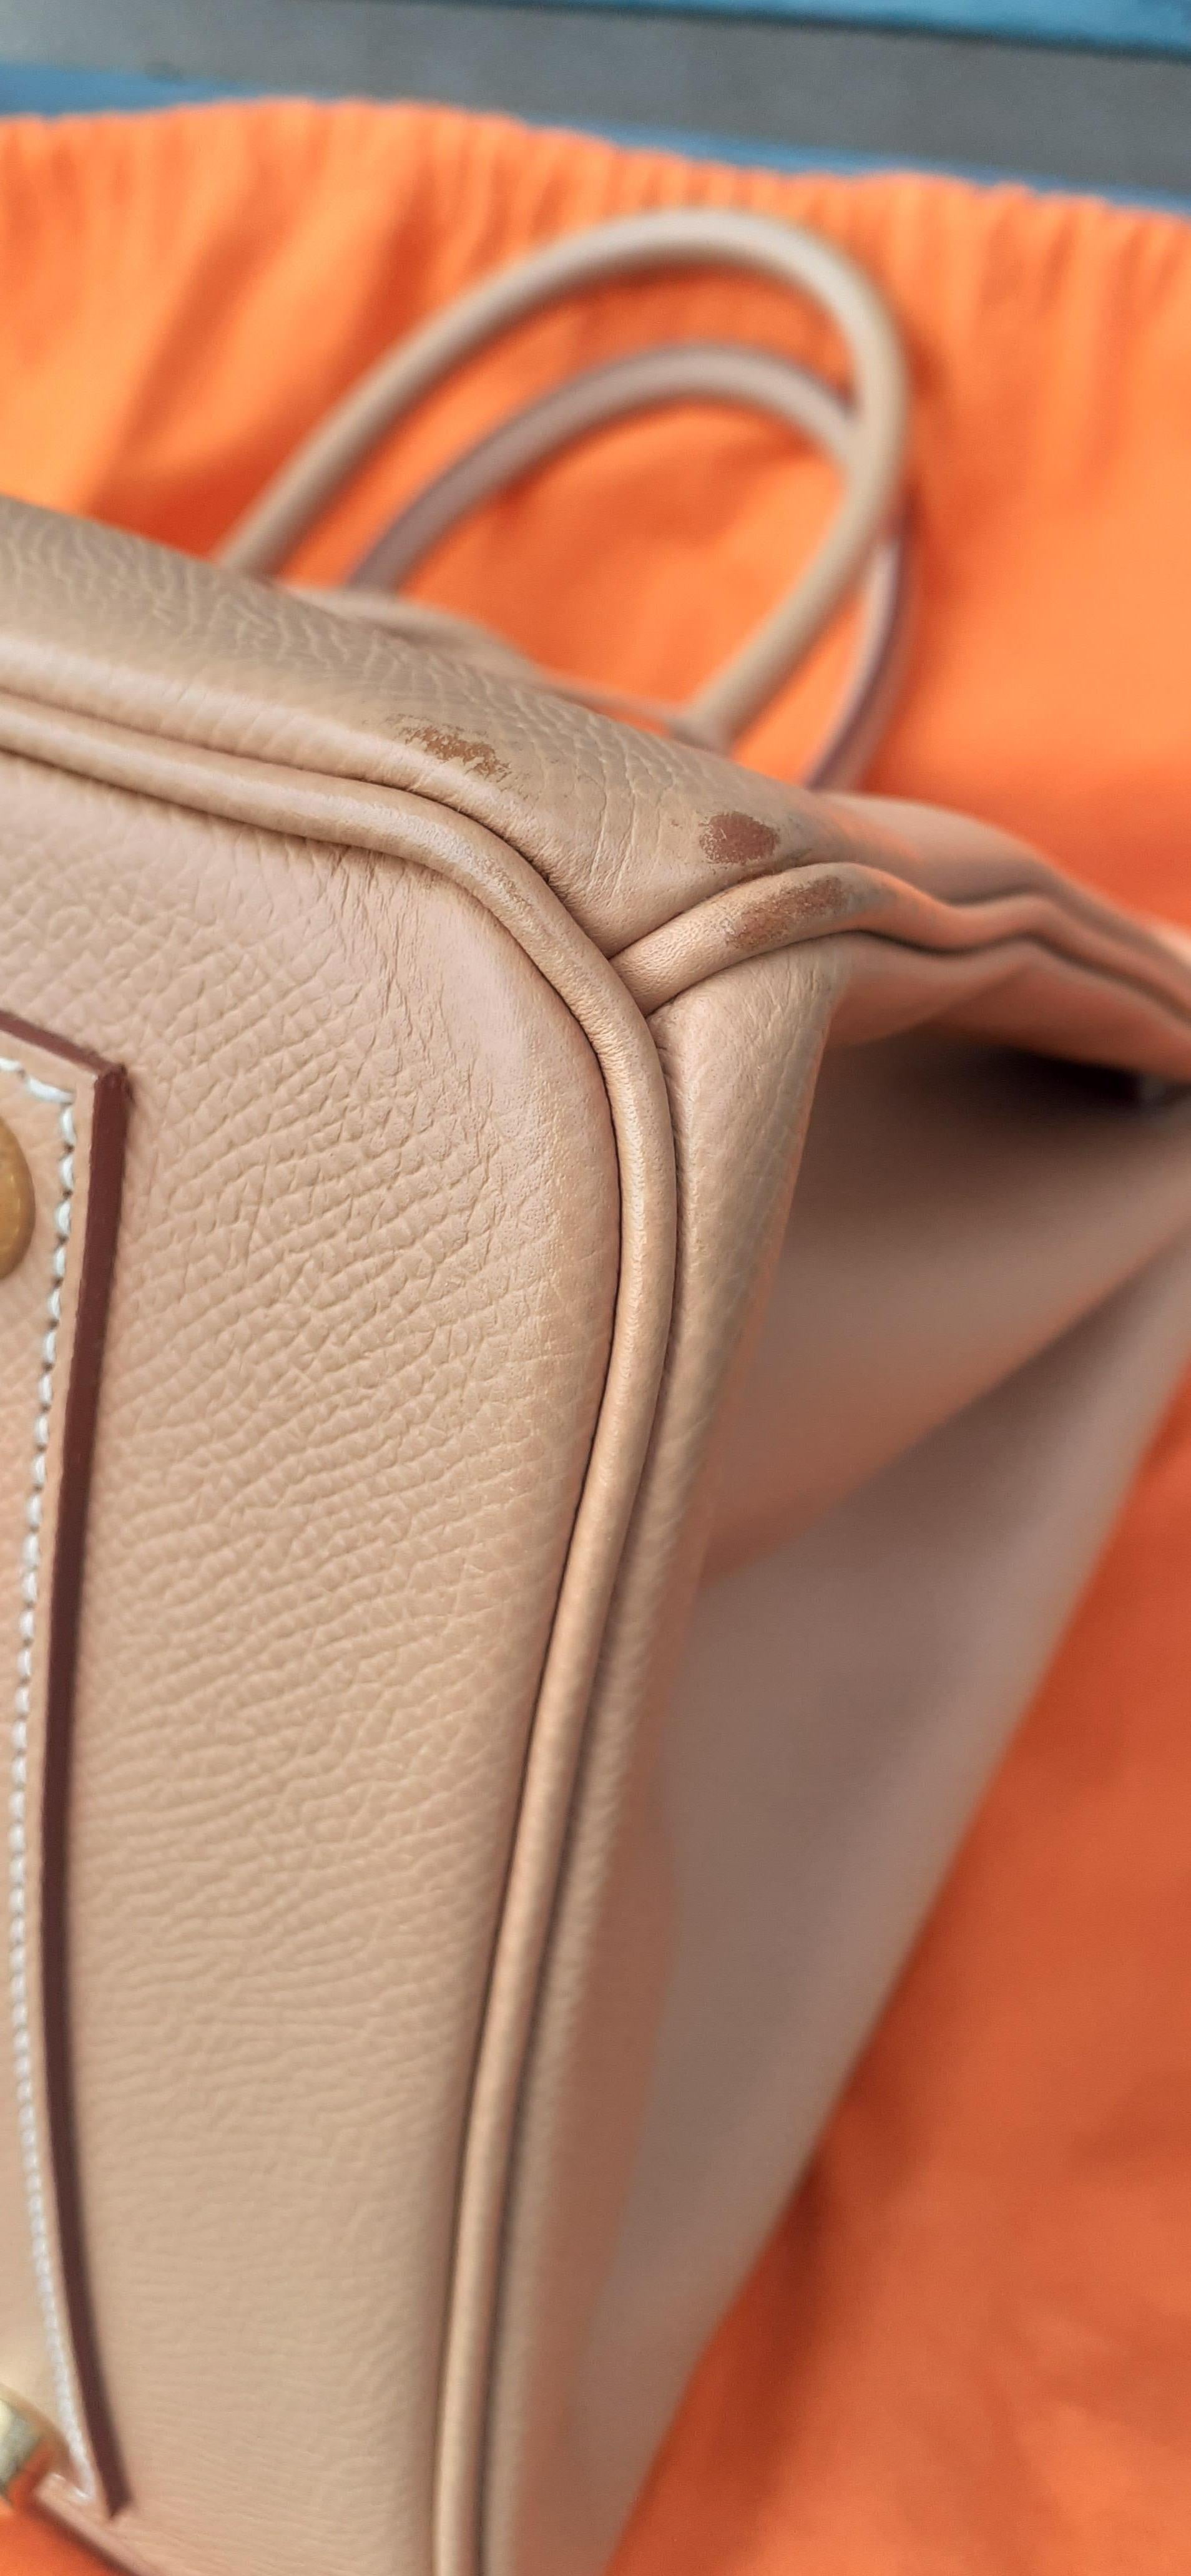 Hermès Birkin Top Handle Bag Naturel Epsom Leather Gold Hdw 35 cm 12